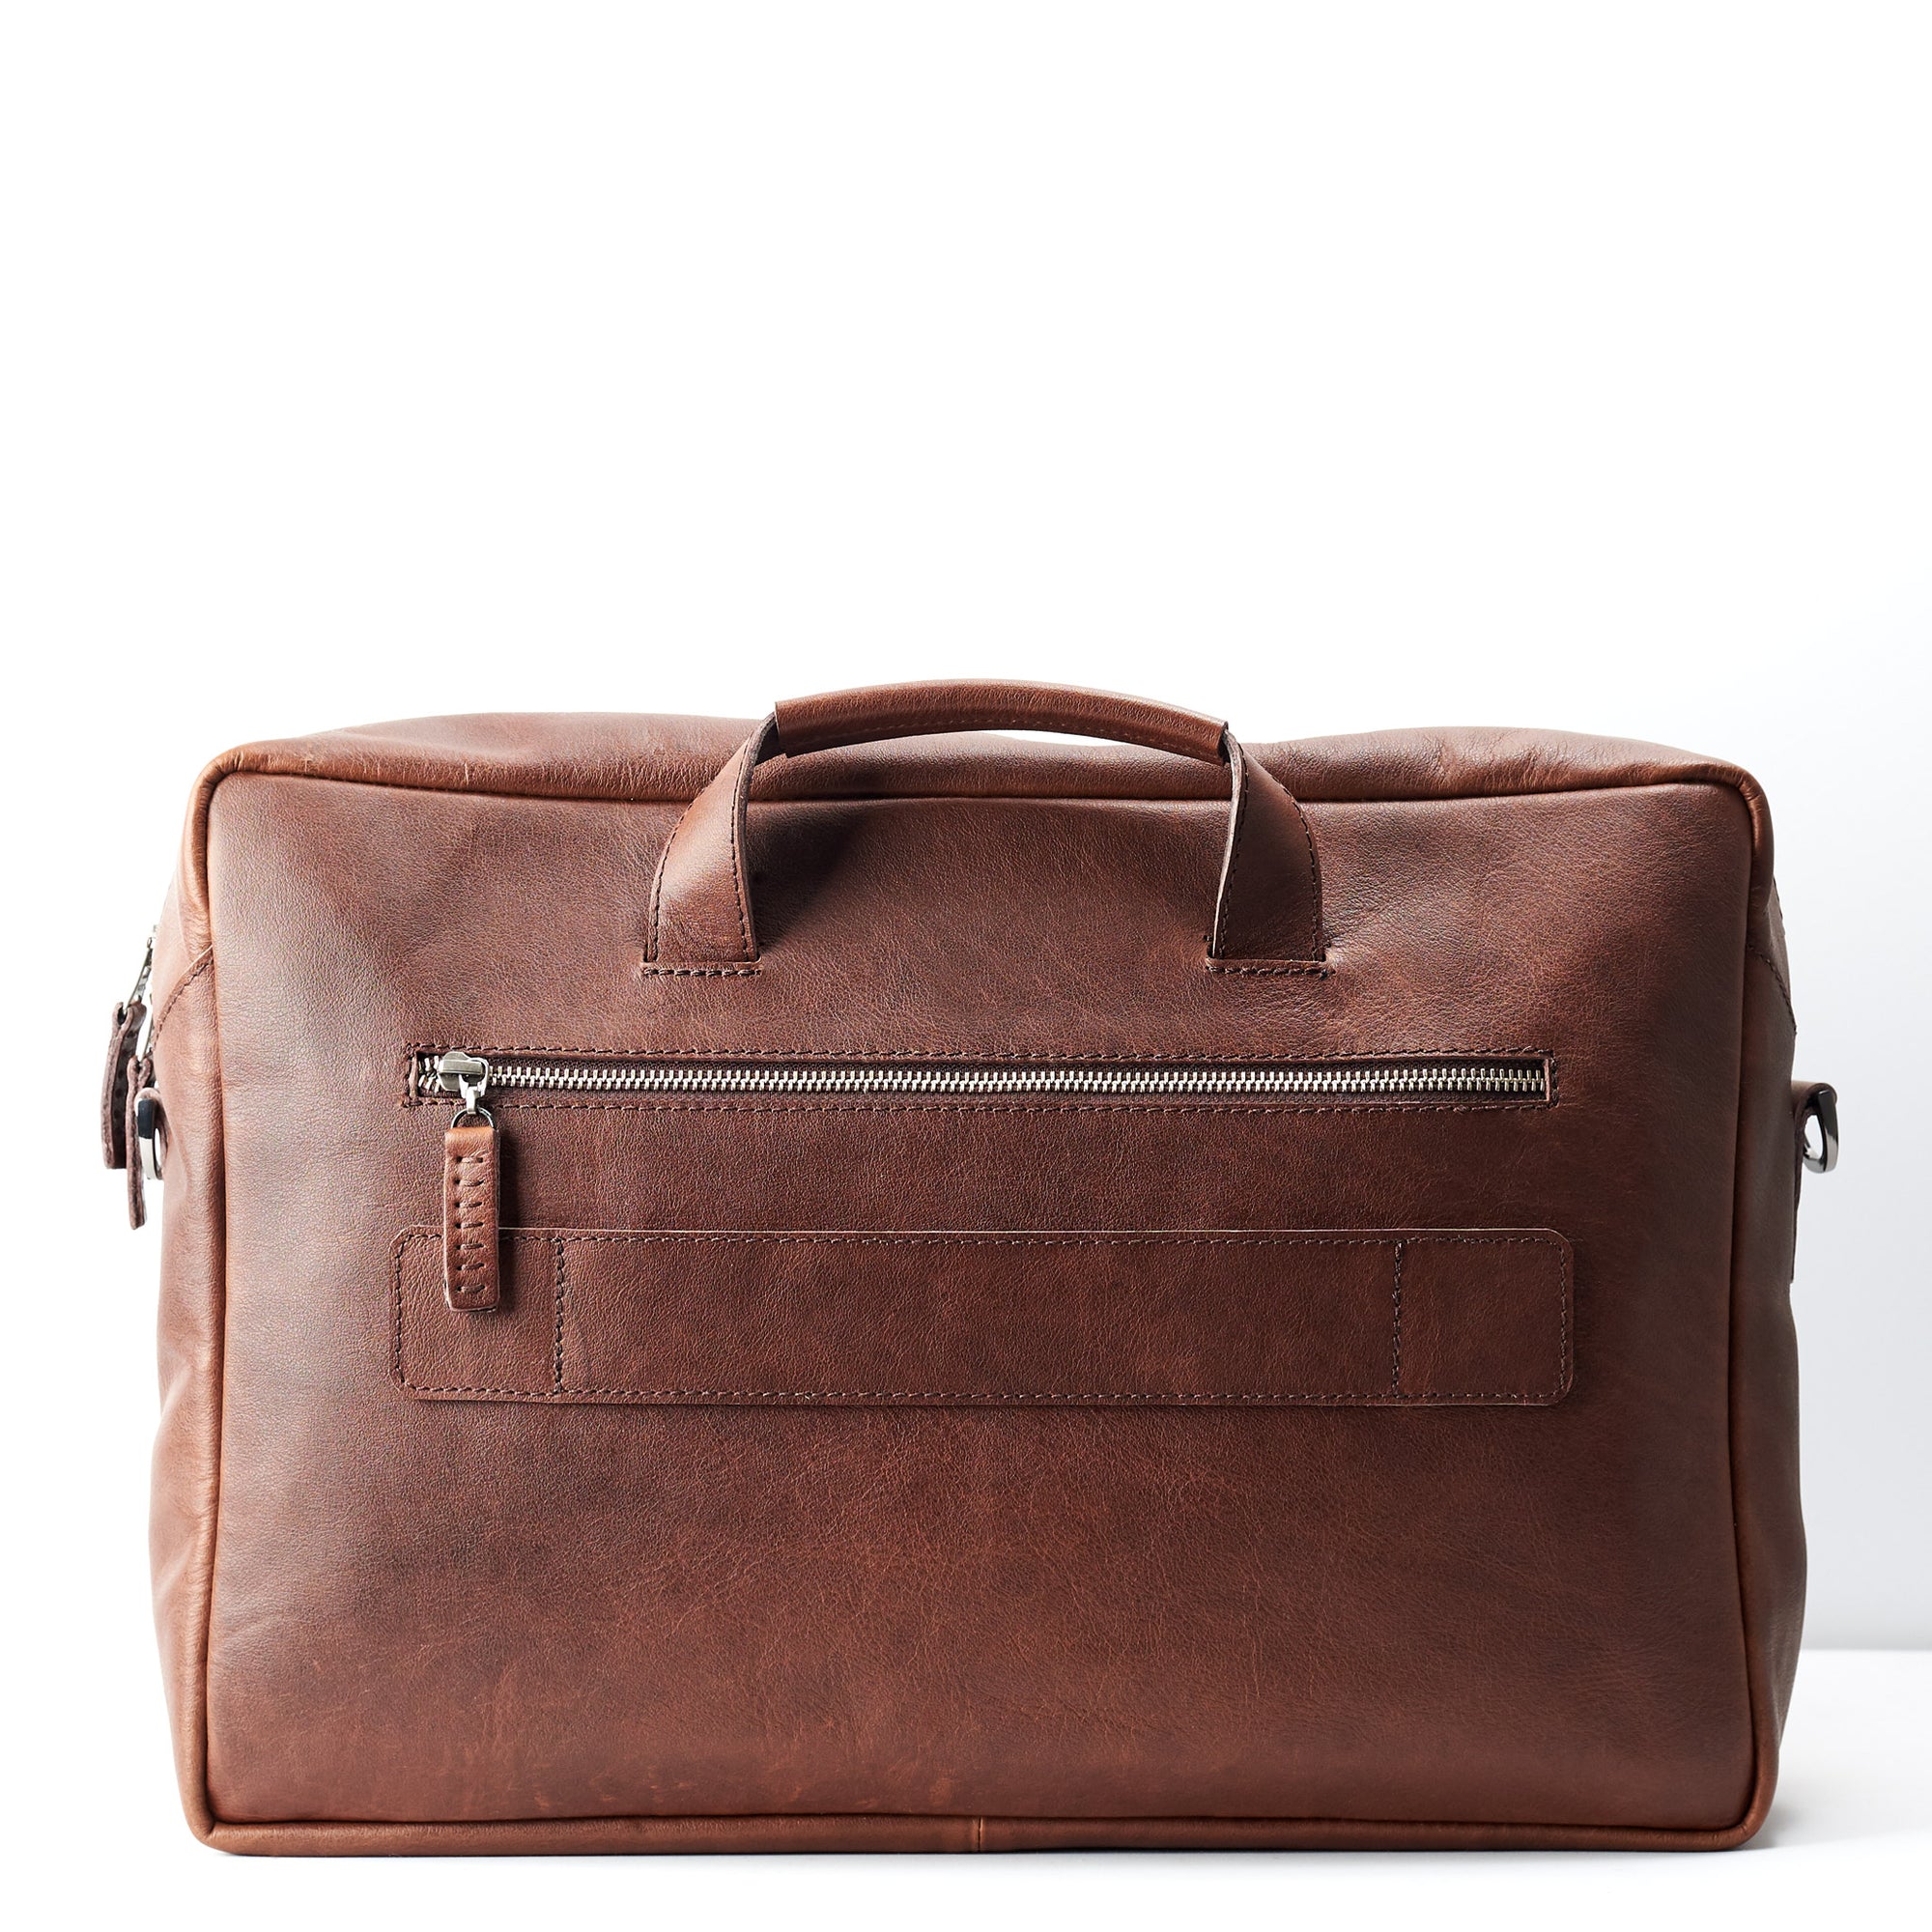 Optional luggage strap. Black handmade leather messenger bag for men. Commuter bag, laptop weekender bag for men